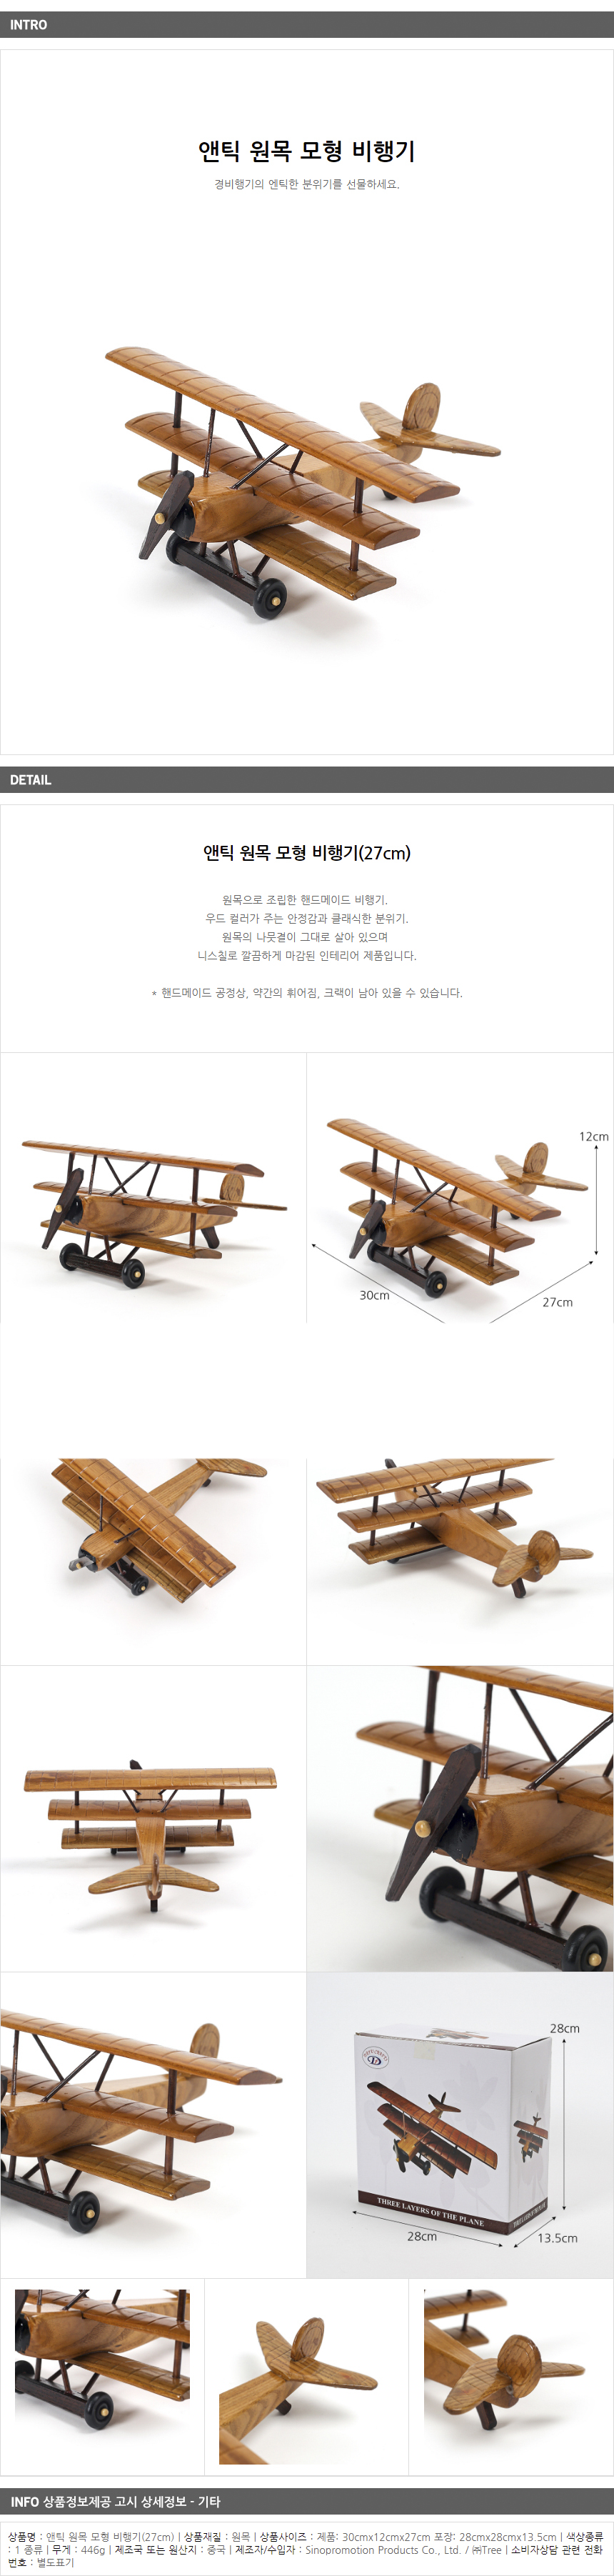 앤틱 원목 모형비행기(27cm)/핸드메이드 비행기 완구